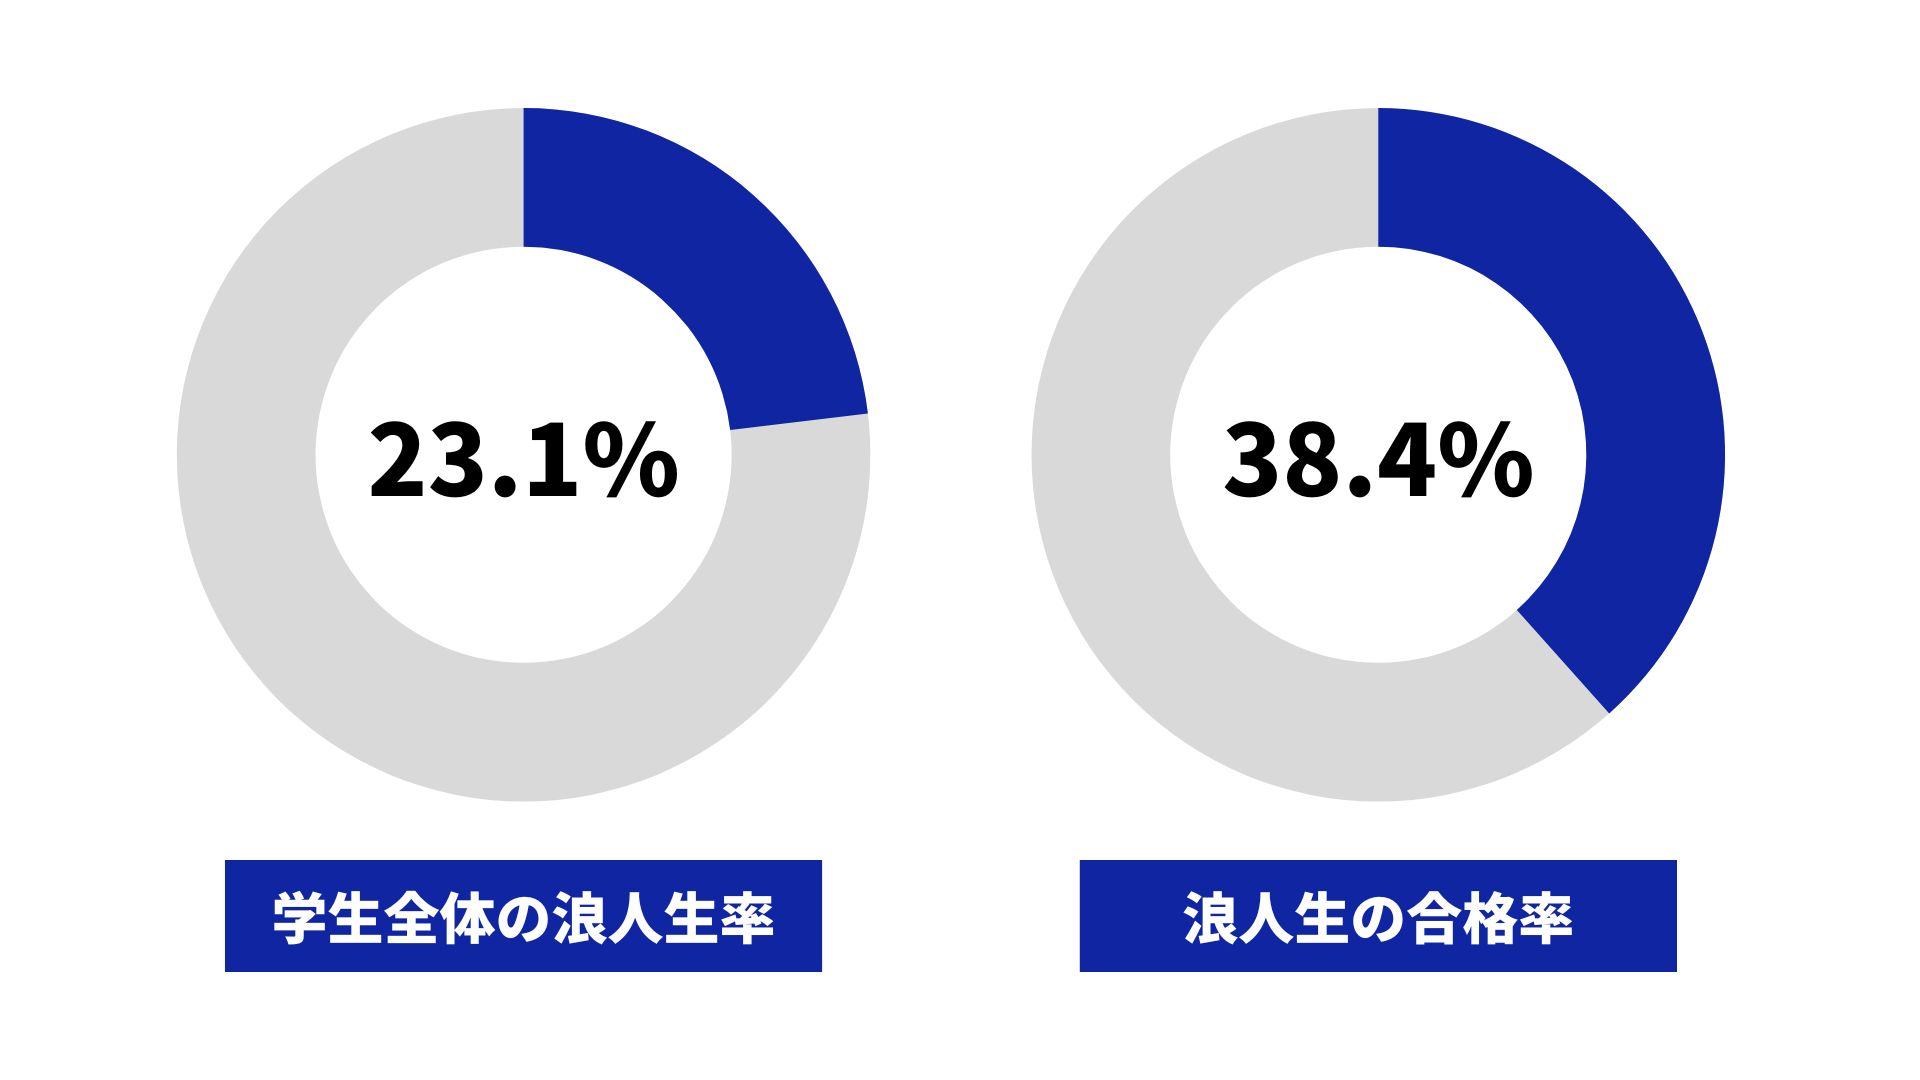 弘前大学の浪人生の割合